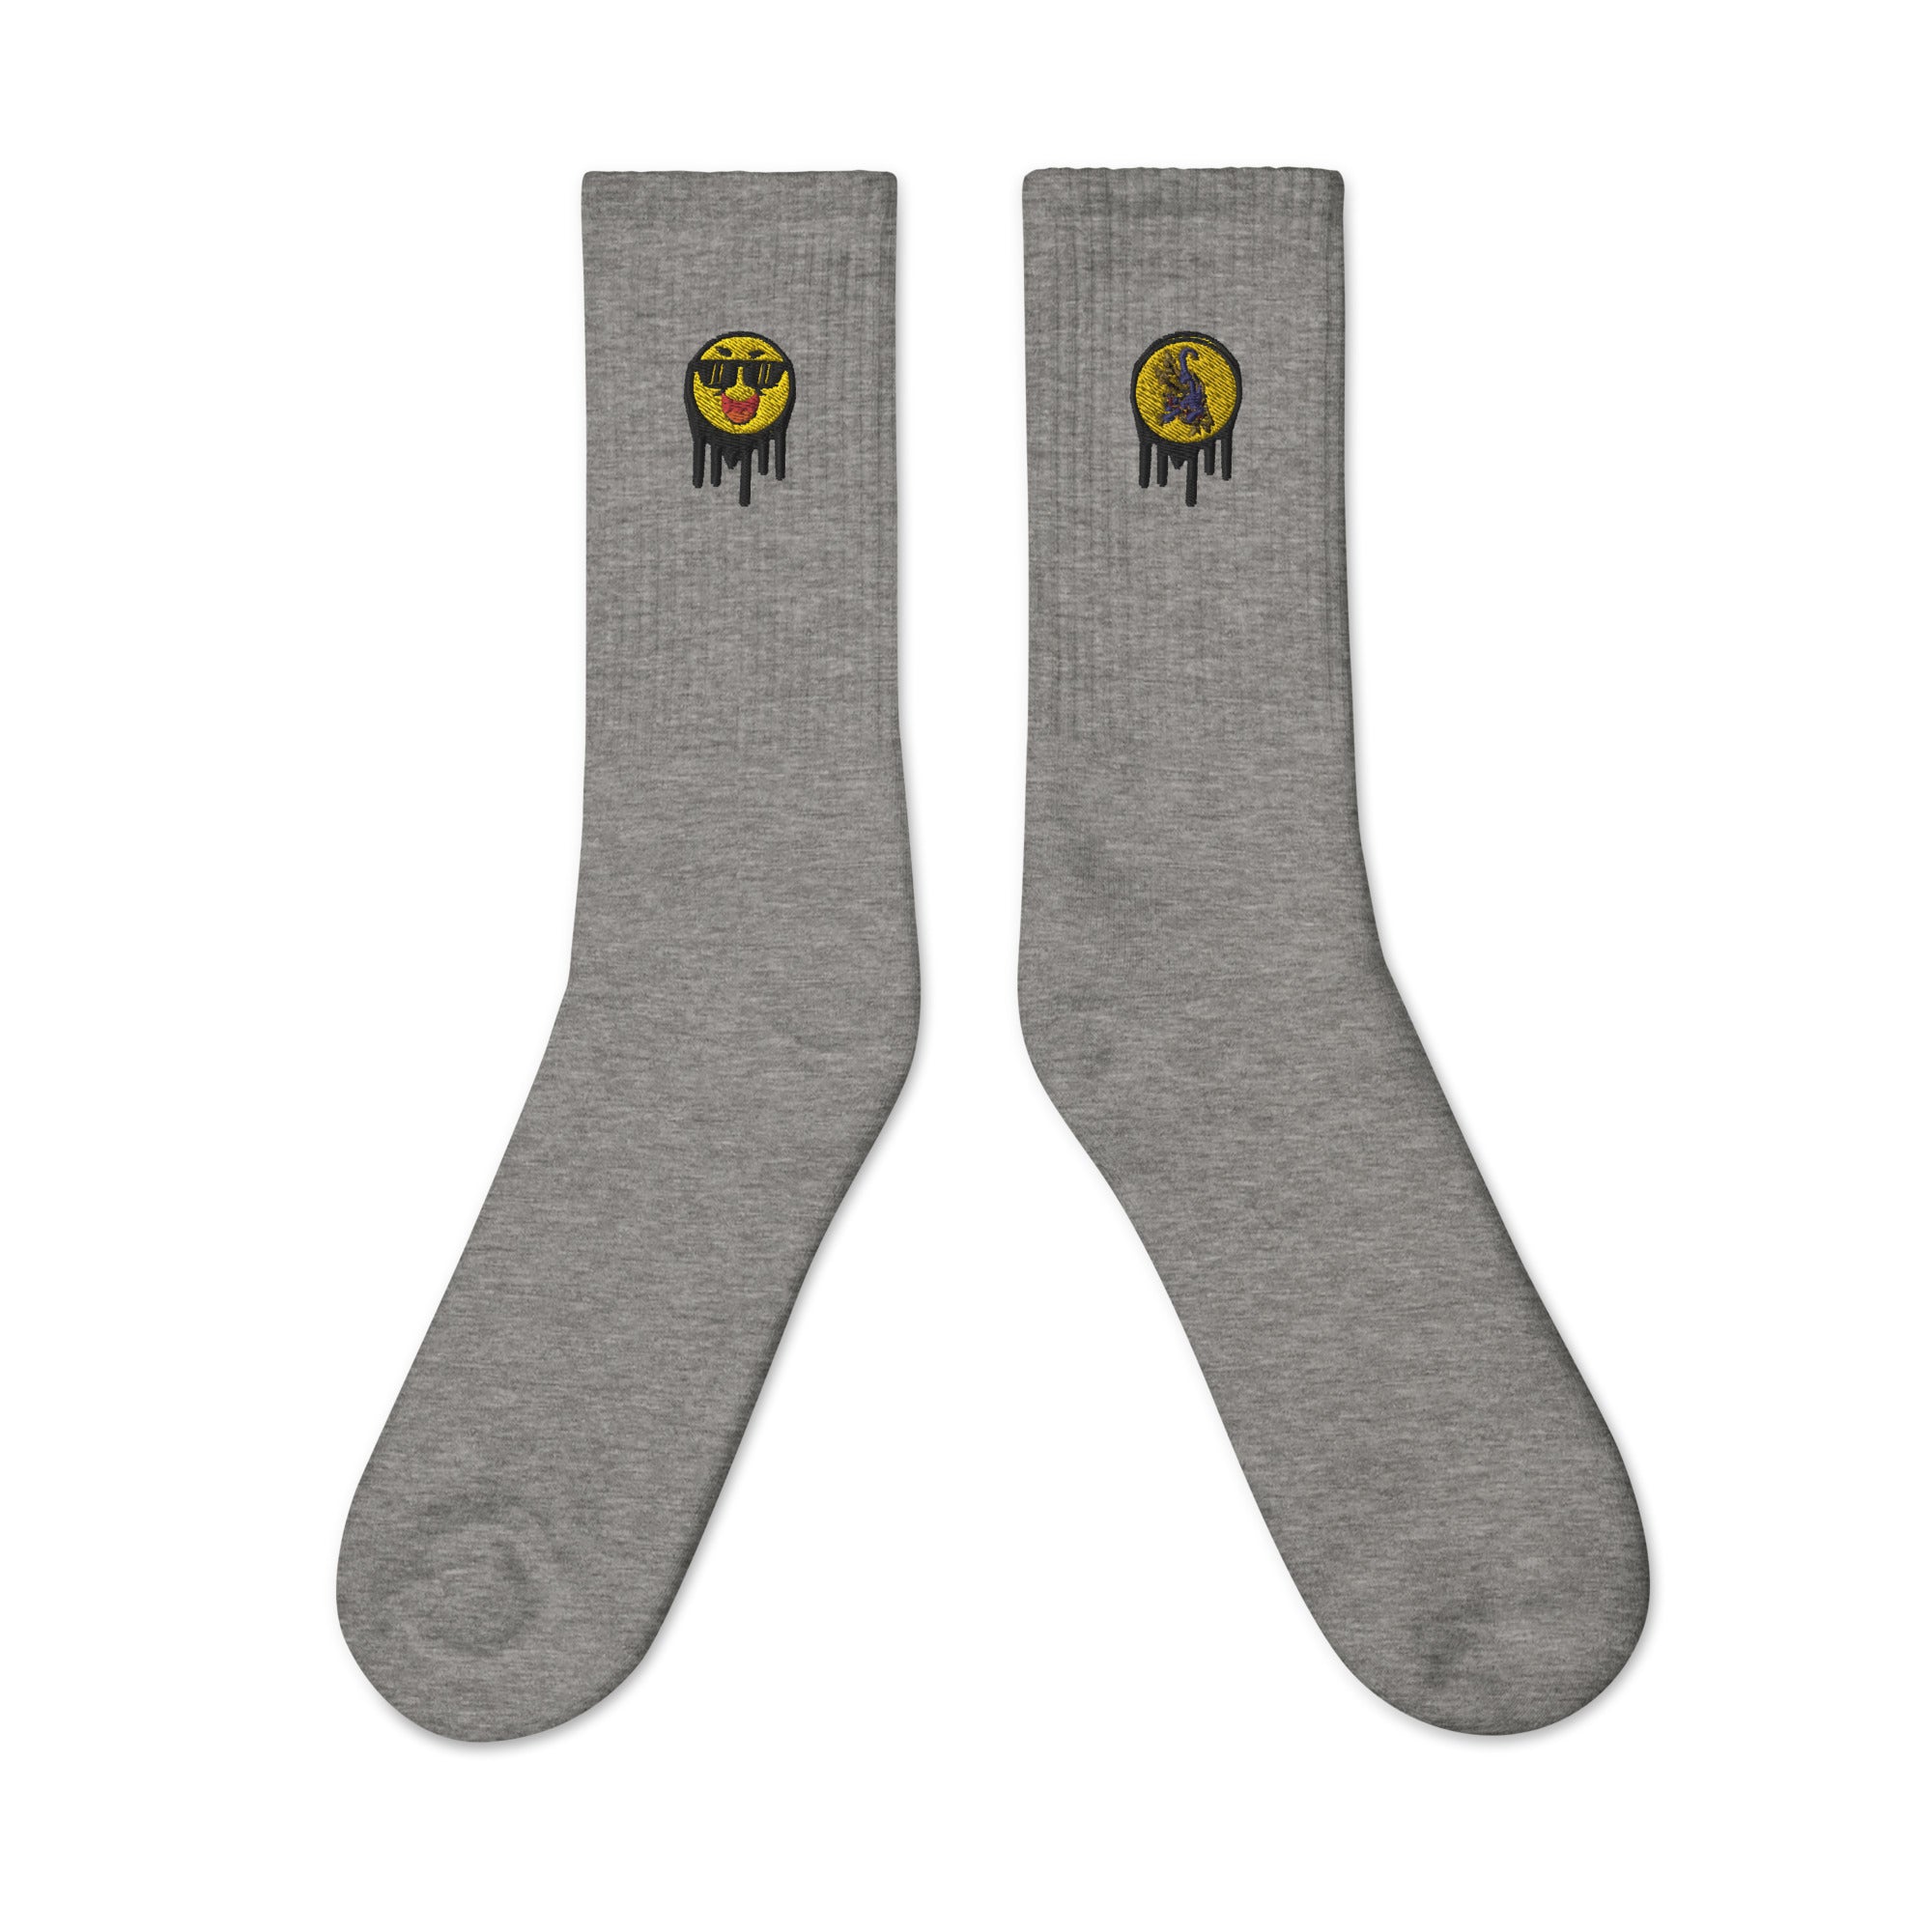 Epic Smiley socks